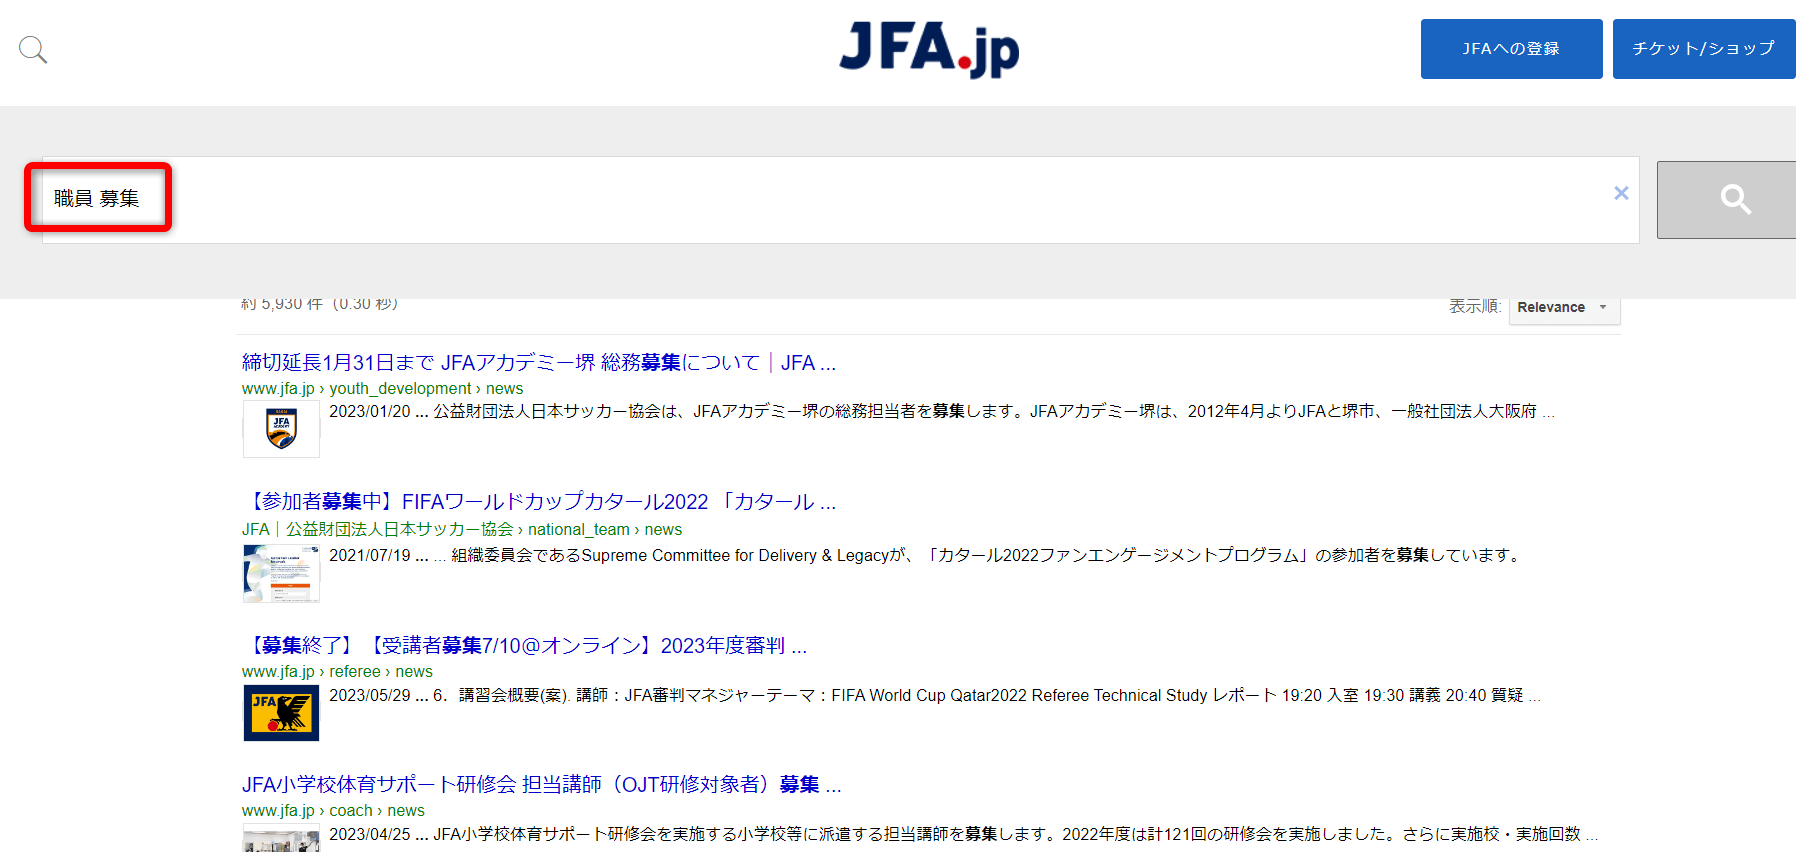 JFA公式サイトで職員募集を確認する方法